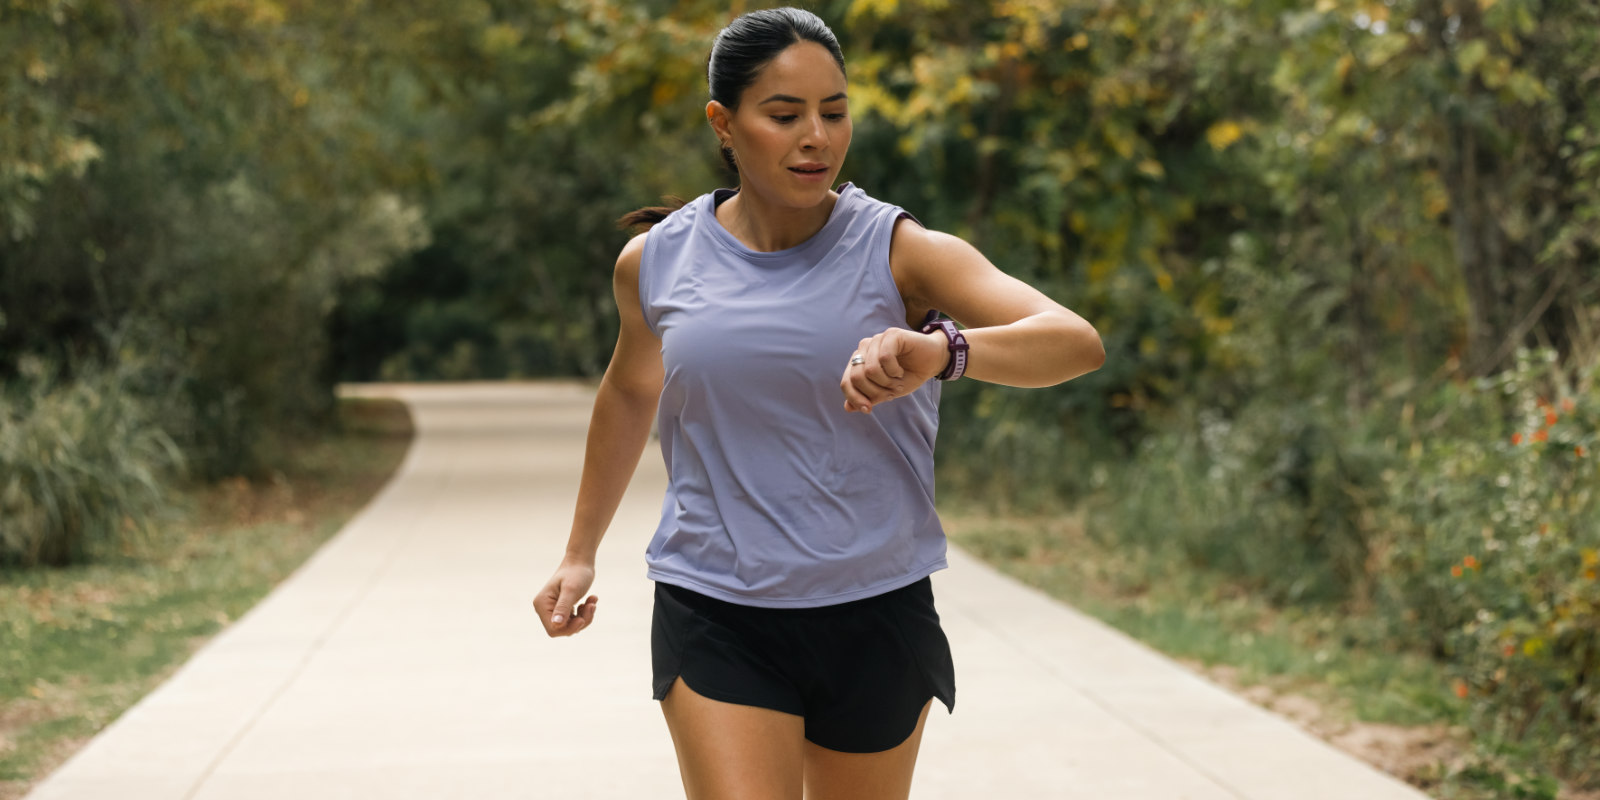 Laufen leicht gemacht: Das wahre Erfolgsgeheimnis der Run-Walk-Run-Methode